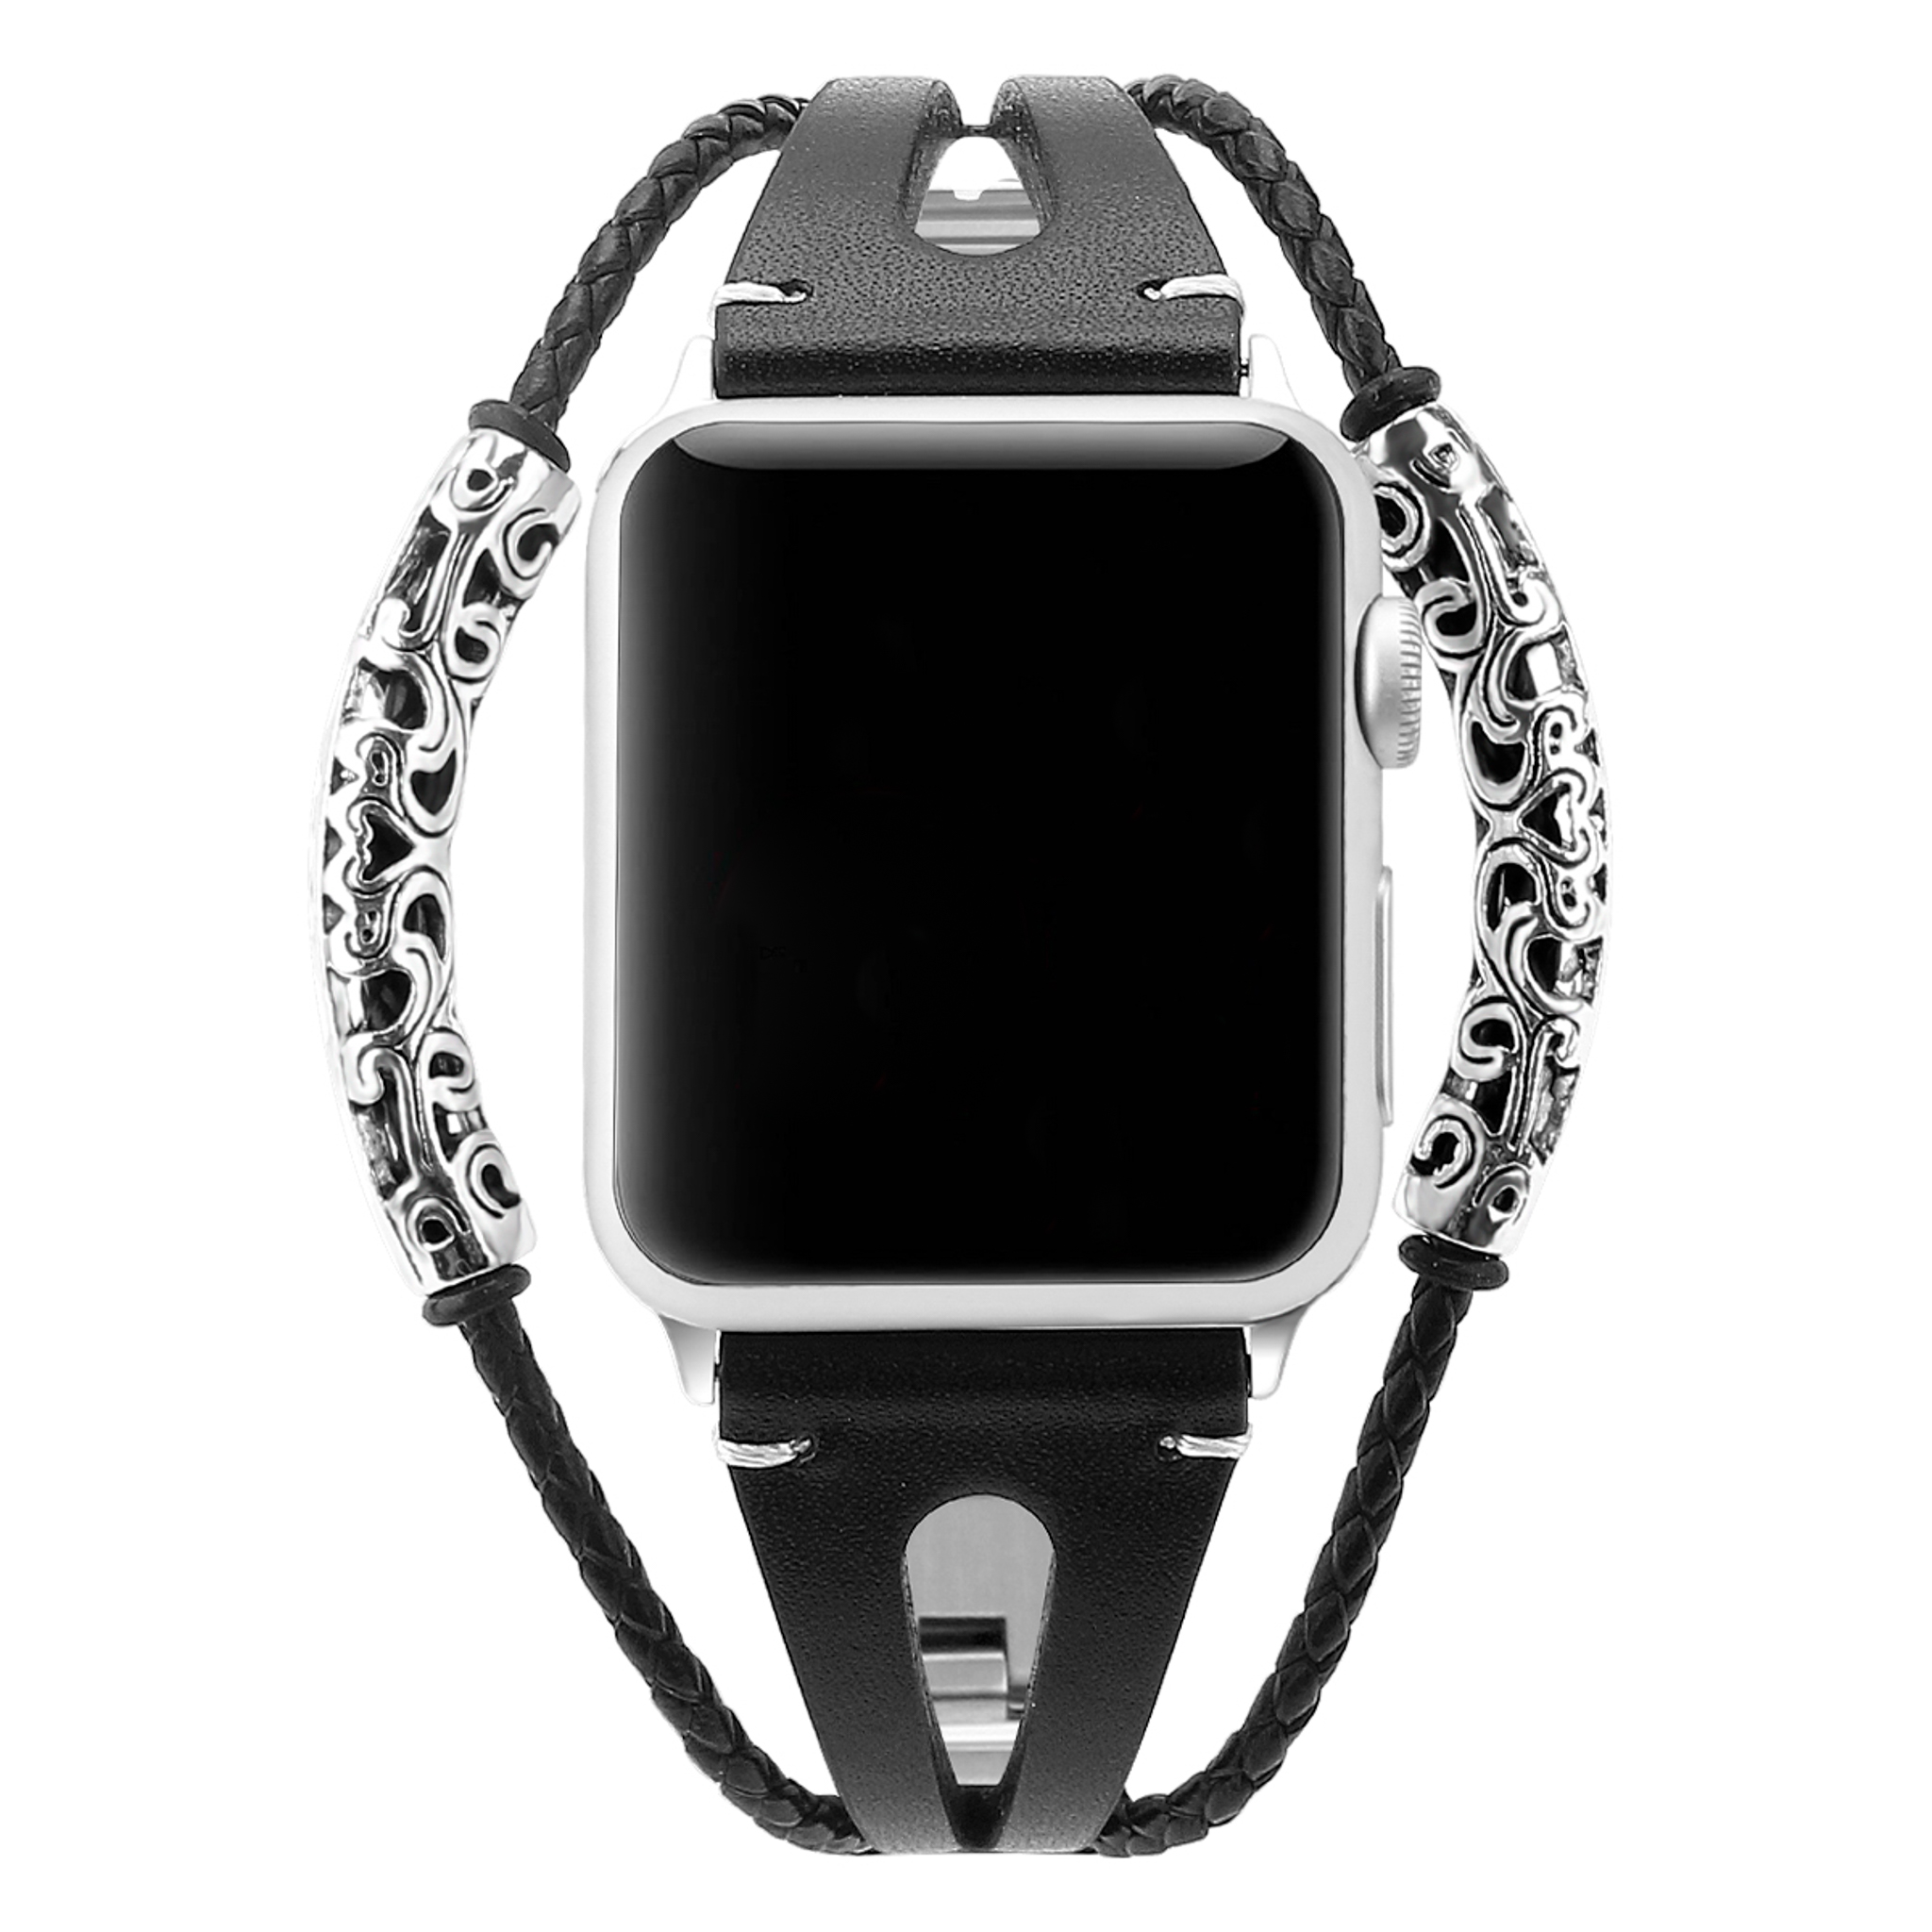 Cinturino gioiello in pelle robusto per Apple Watch - nero